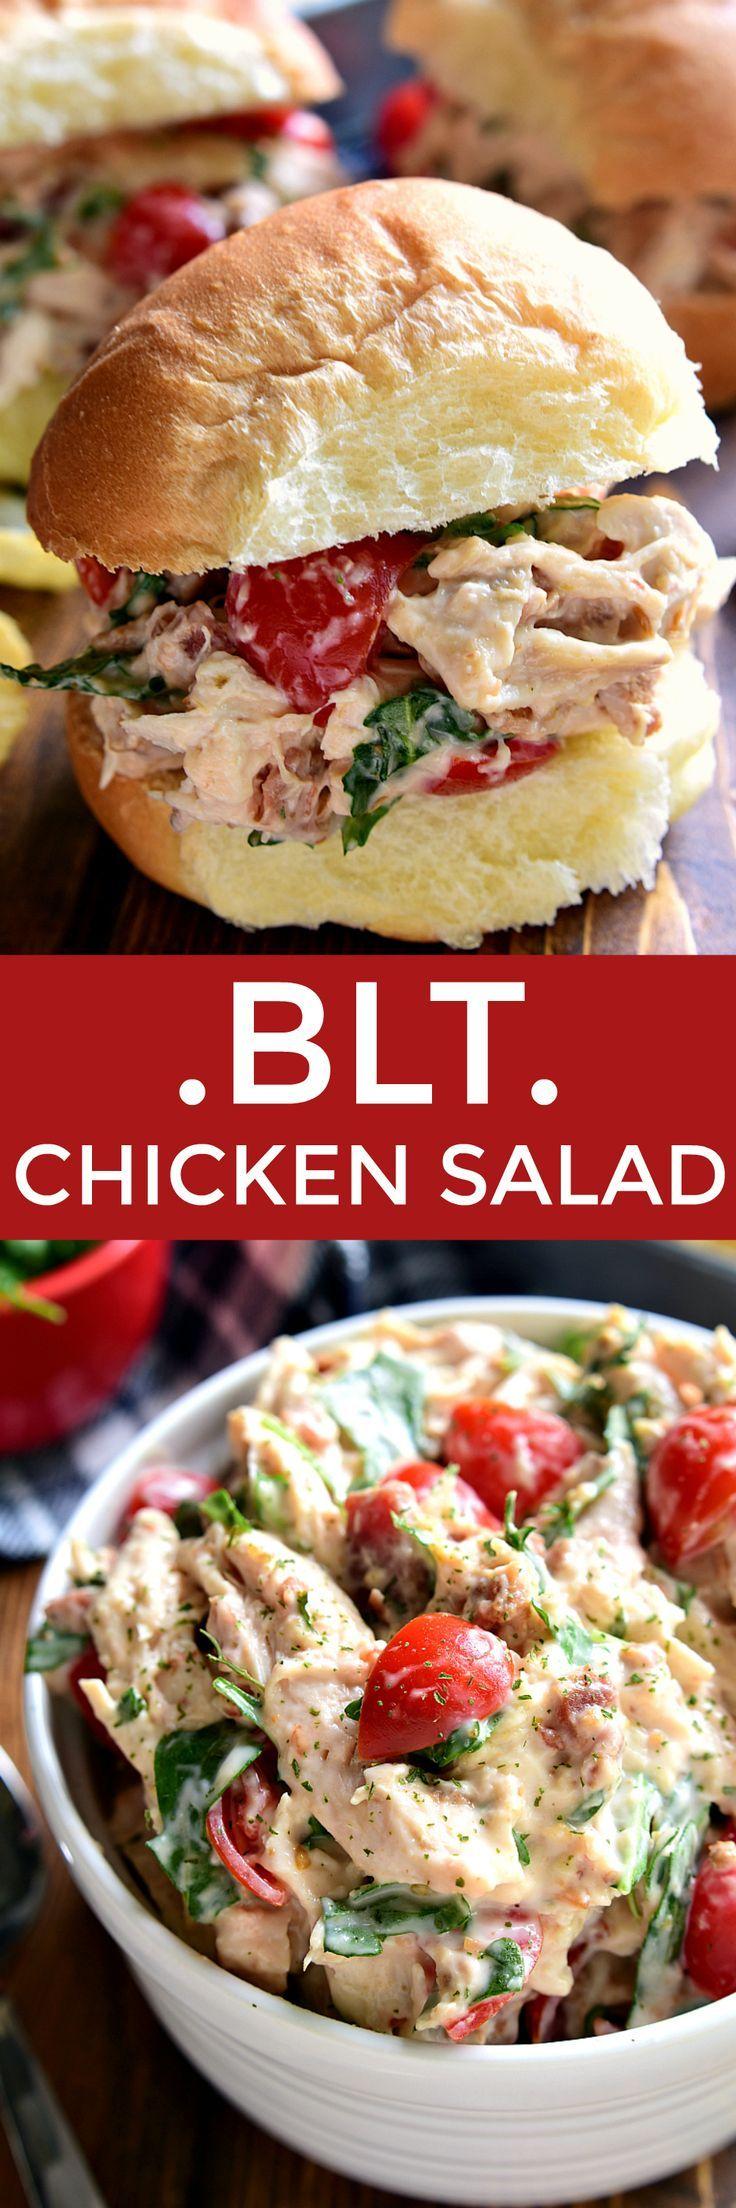 Wedding - BLT Chicken Salad